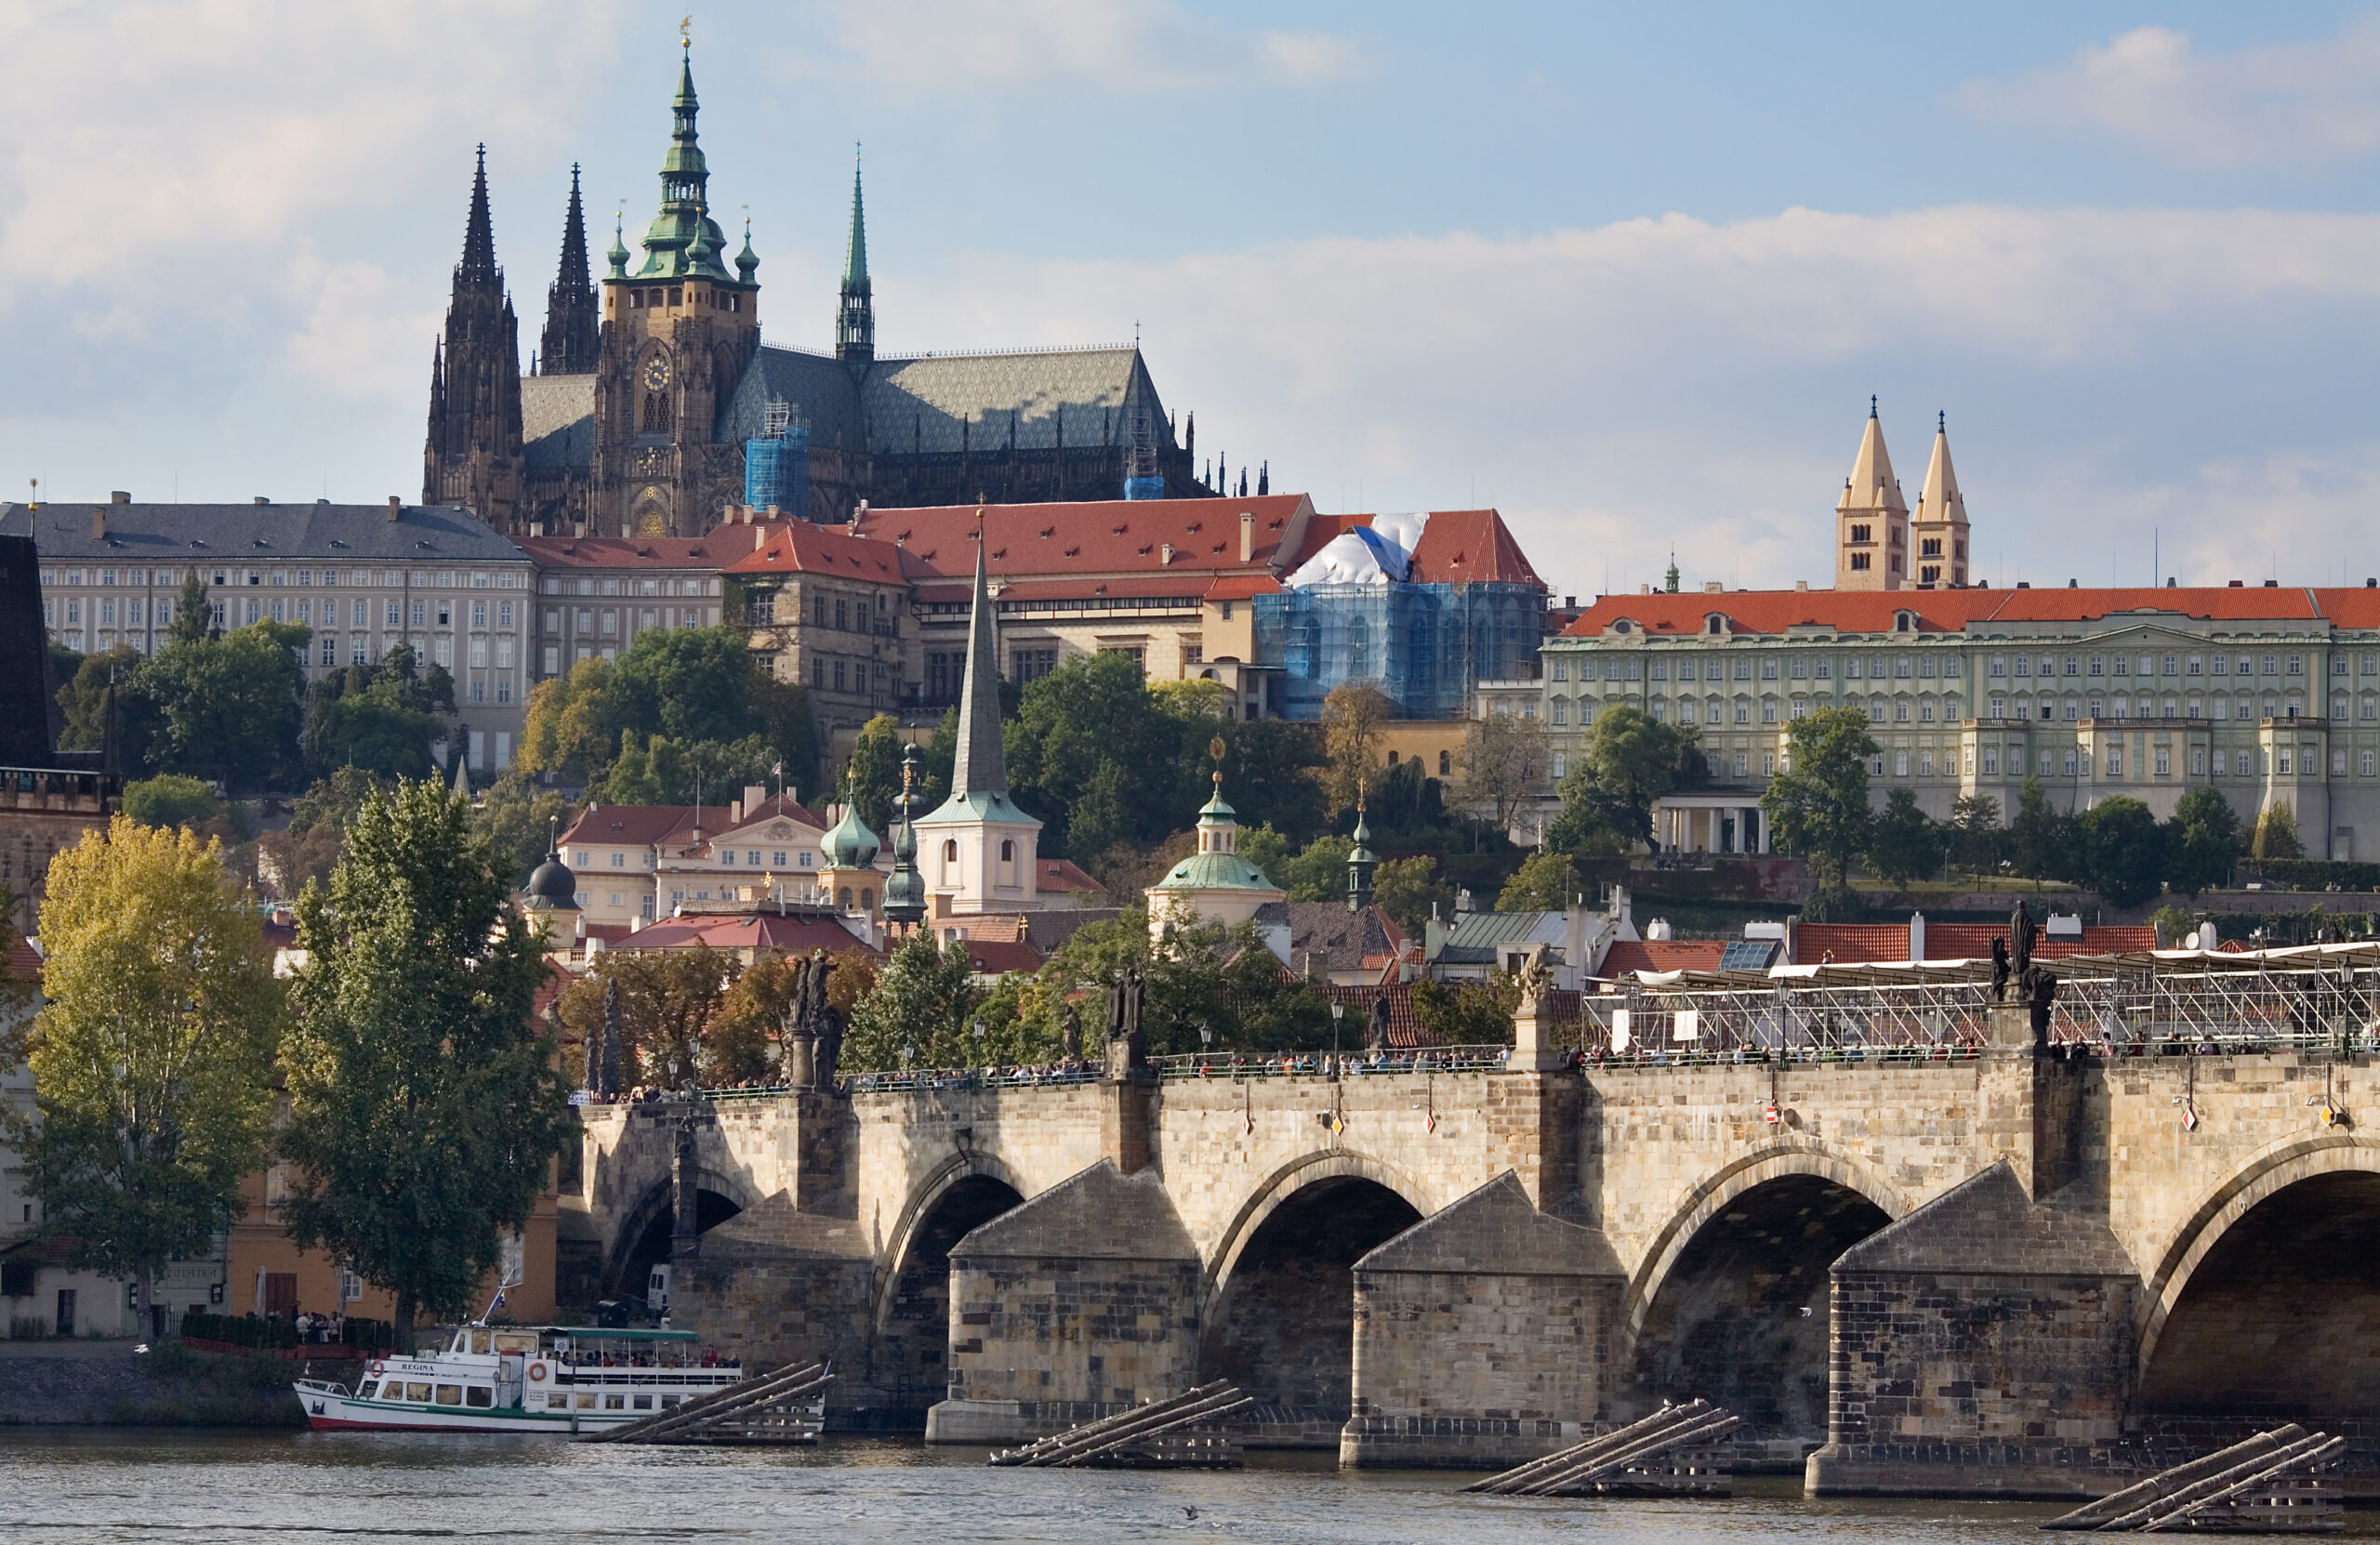 Prague, Czech Republic – Charles Bridge and Prague Castle